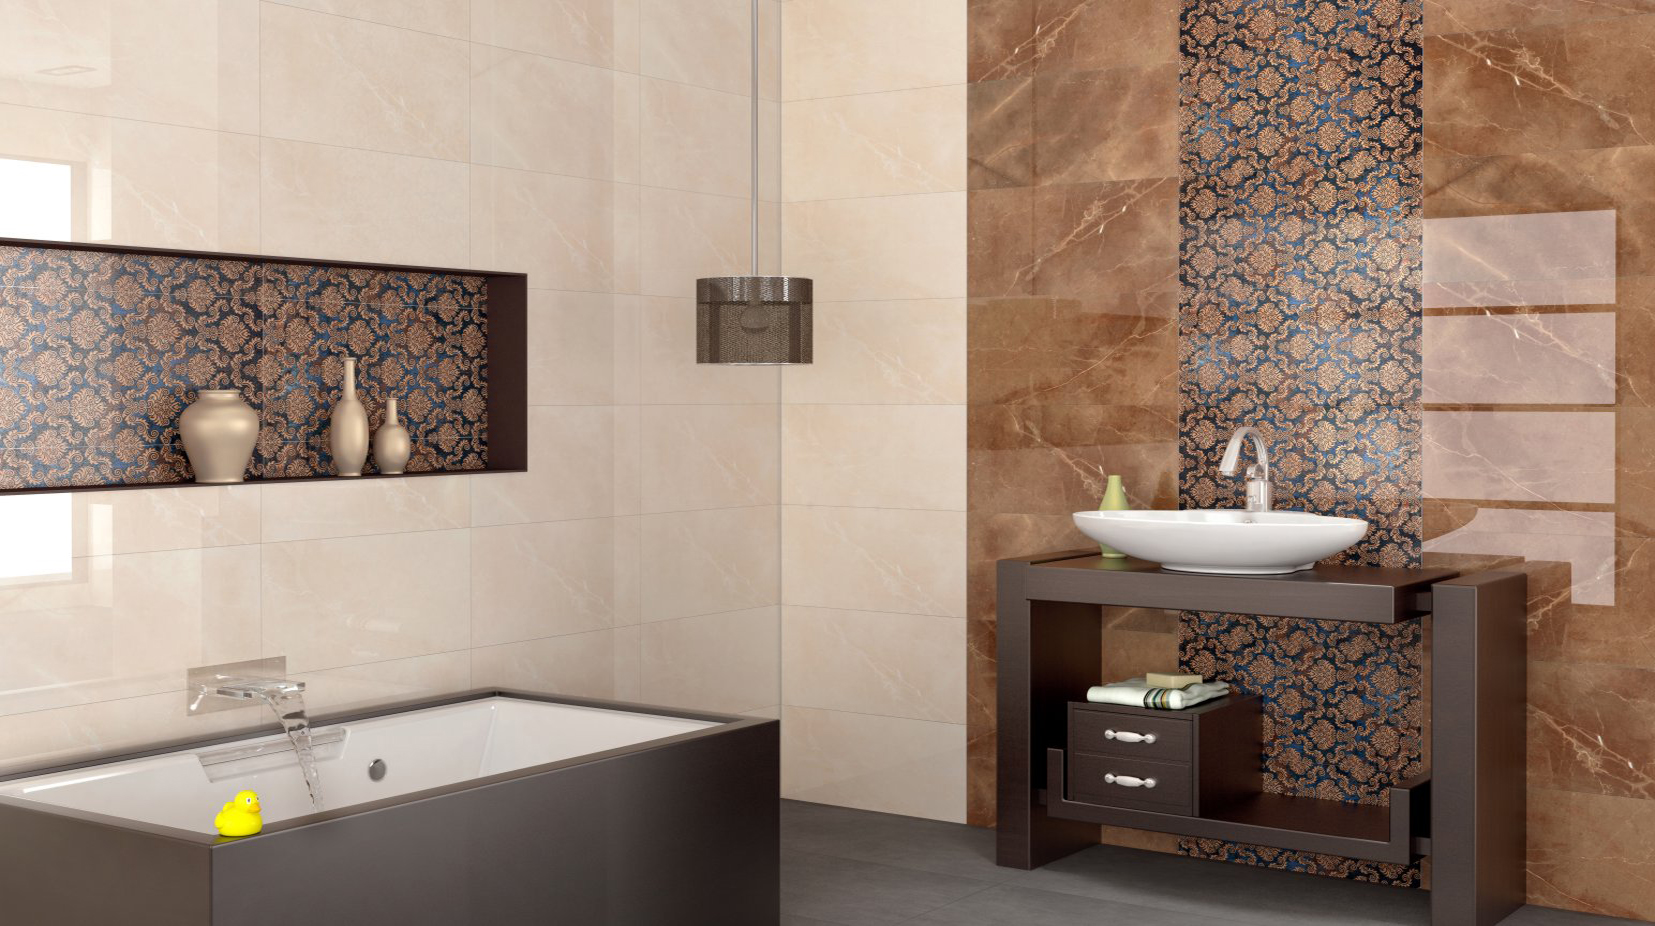 Polished Porcelain Tiles Best, Best Bathroom Tiles Design In India